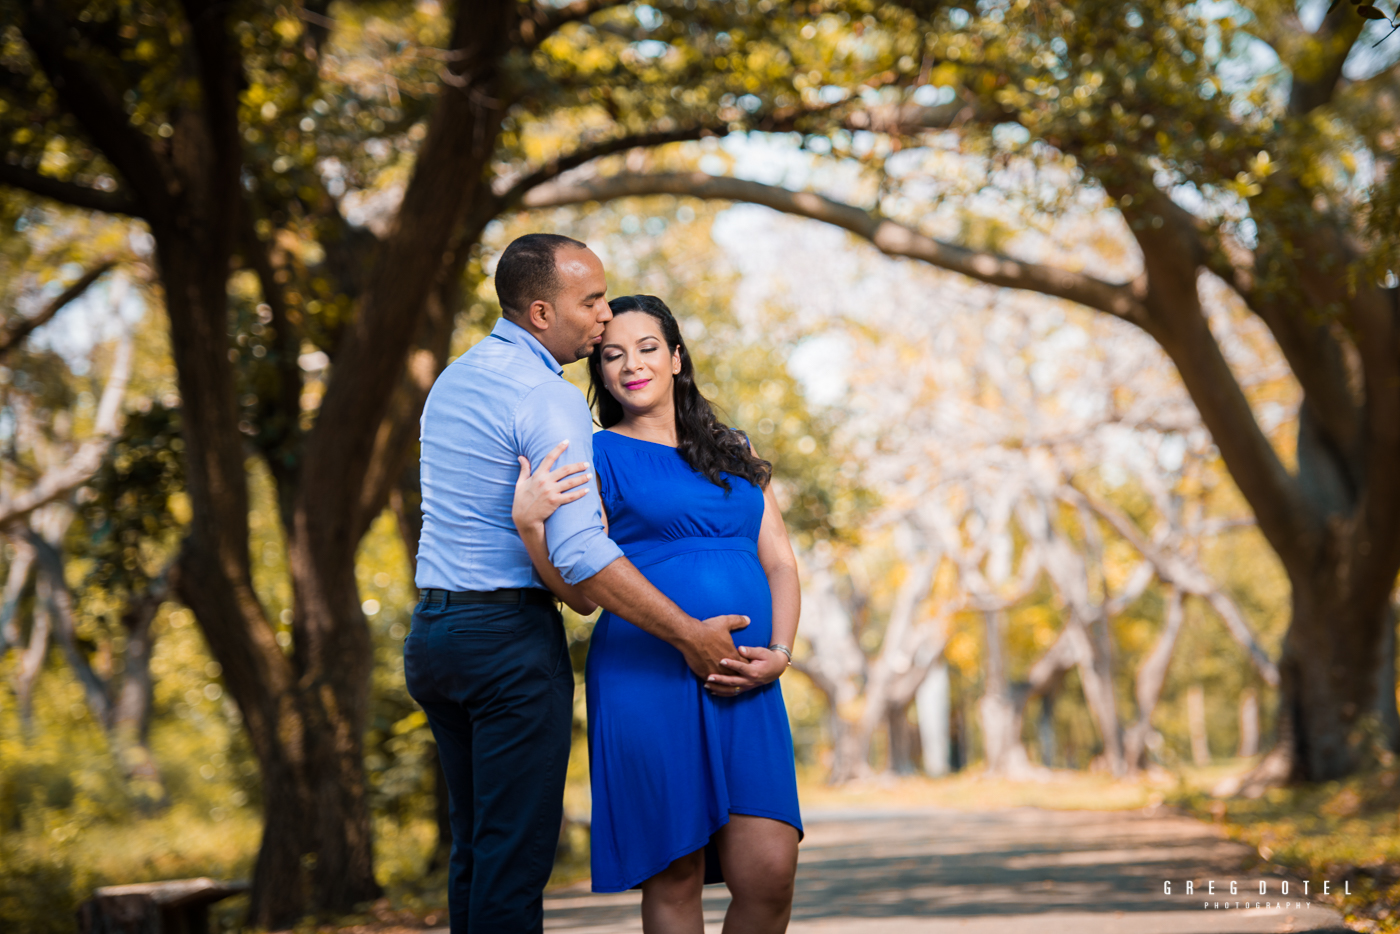 Sesion de fotos de embarazada en el parque mirador sur de Santo Domingo, Republica Dominicana